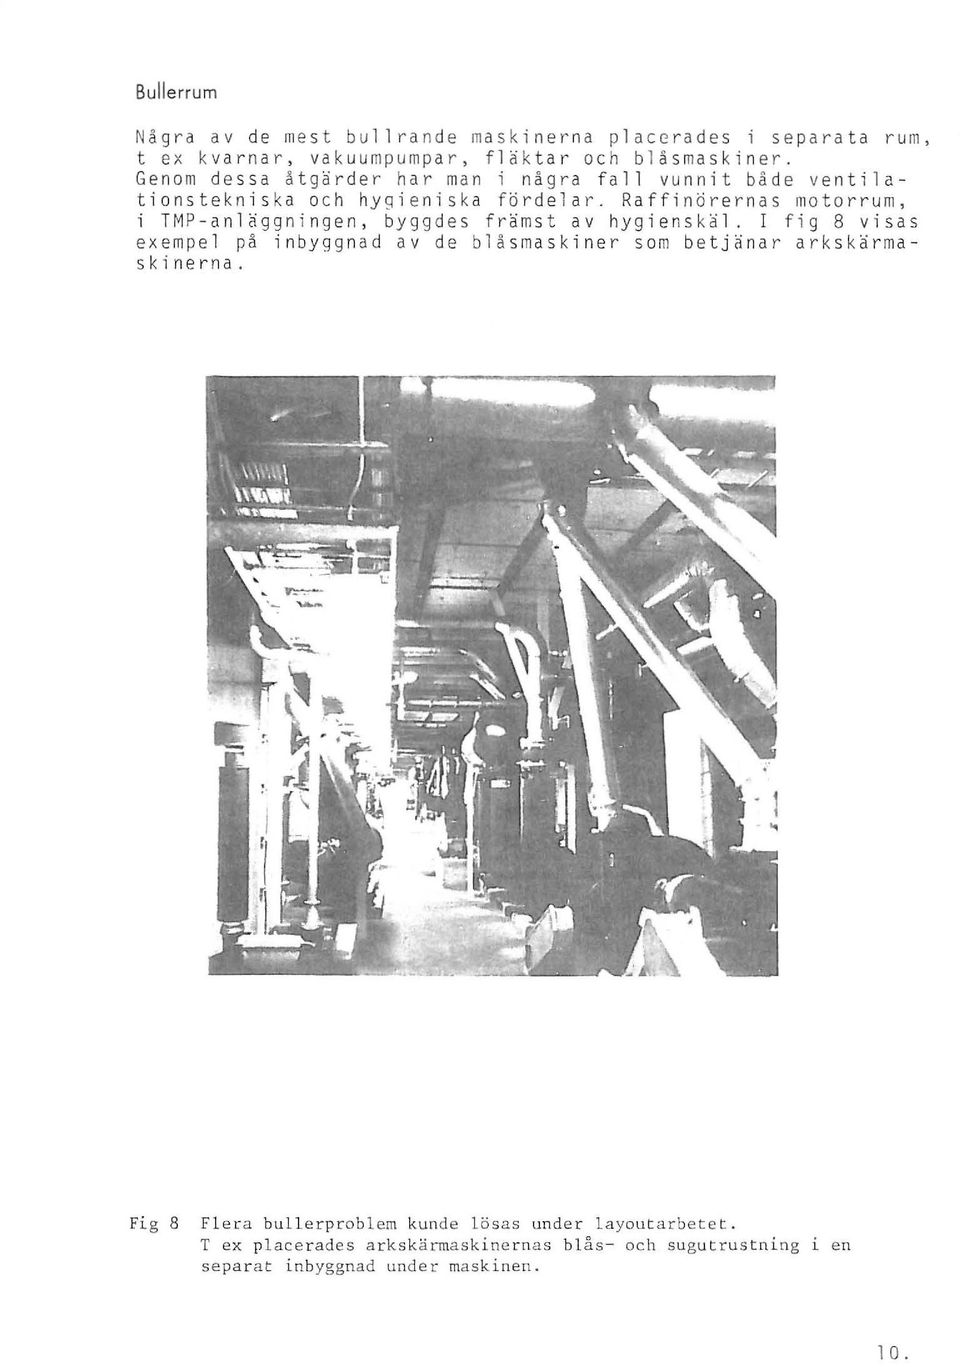 Raffinörernas motorrum, i TMP-anläggningen, byggdes främst av hygienskäl.